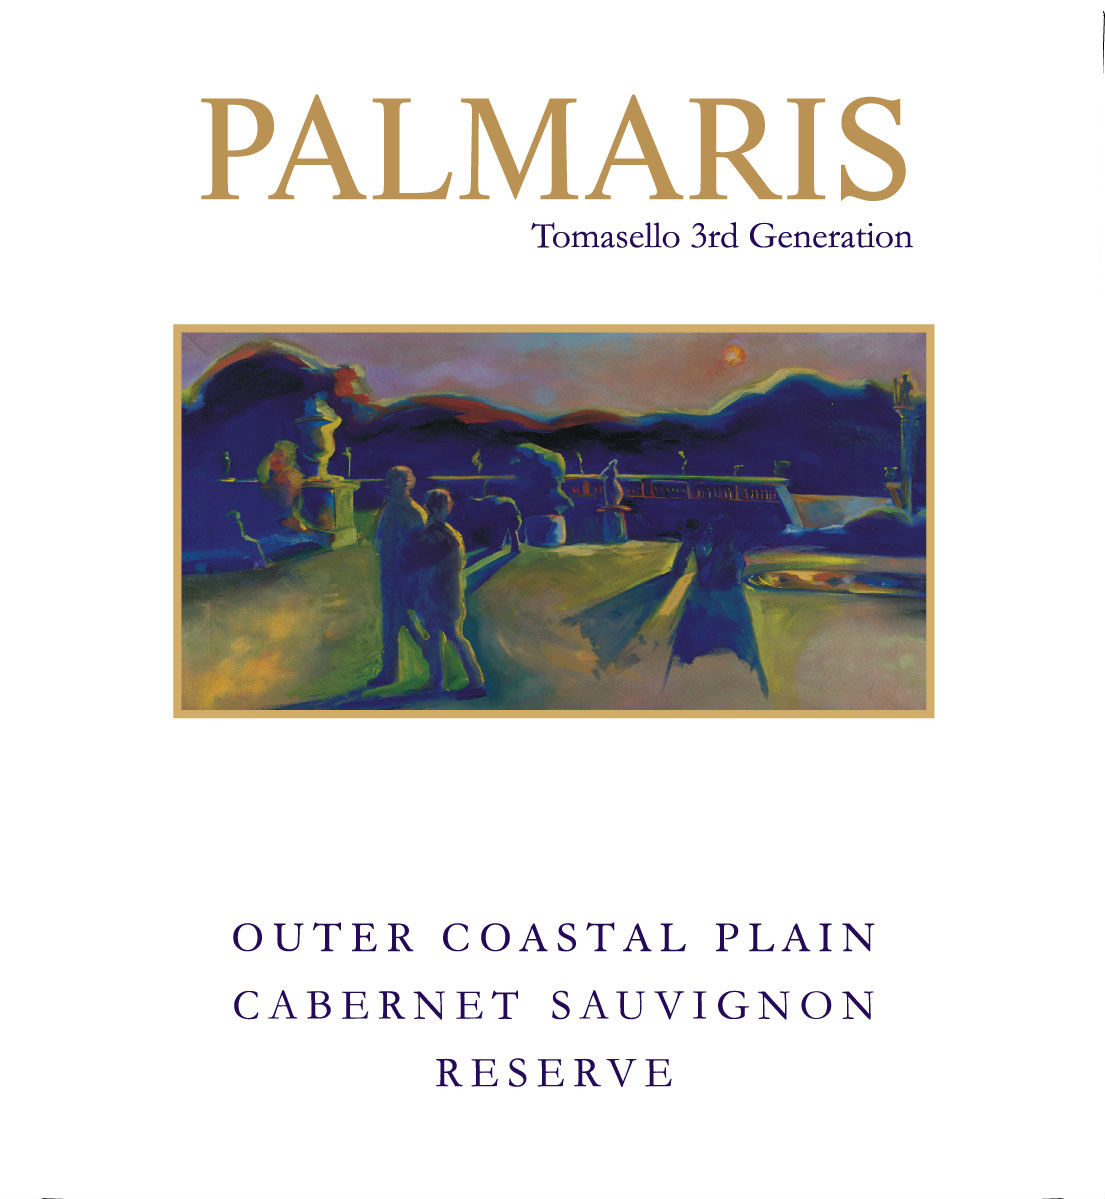 Product Image for Palmaris 2012 Outer Coastal Plain Cabernet Sauvignon Reserve